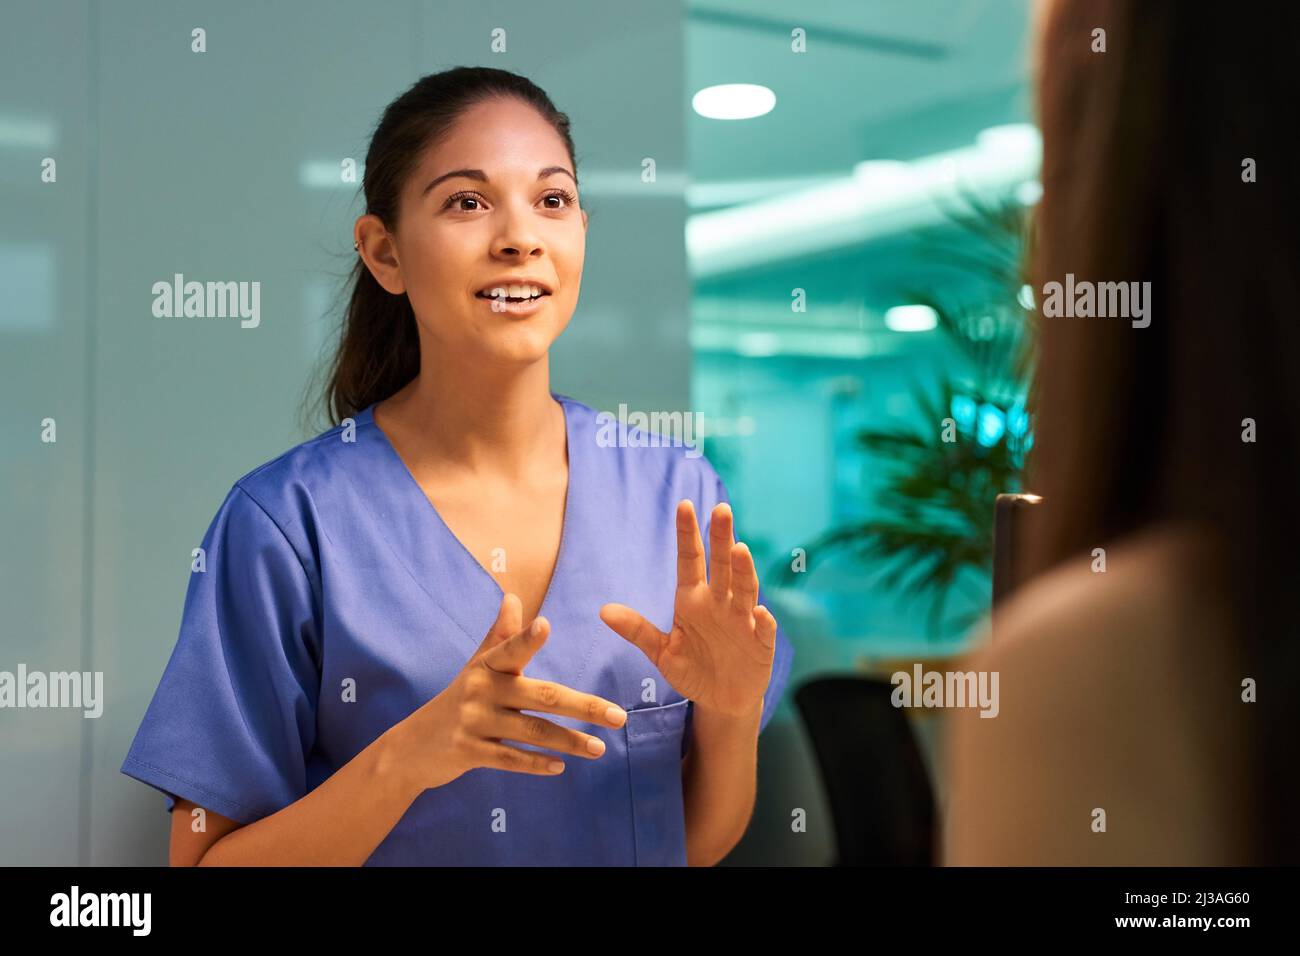 Erläuterung der medizinischen Abdeckung. Aufnahme einer jungen Krankenschwester, die mit ihrer Patientin in der Klinik über einen Eingriff diskutiert. Stockfoto